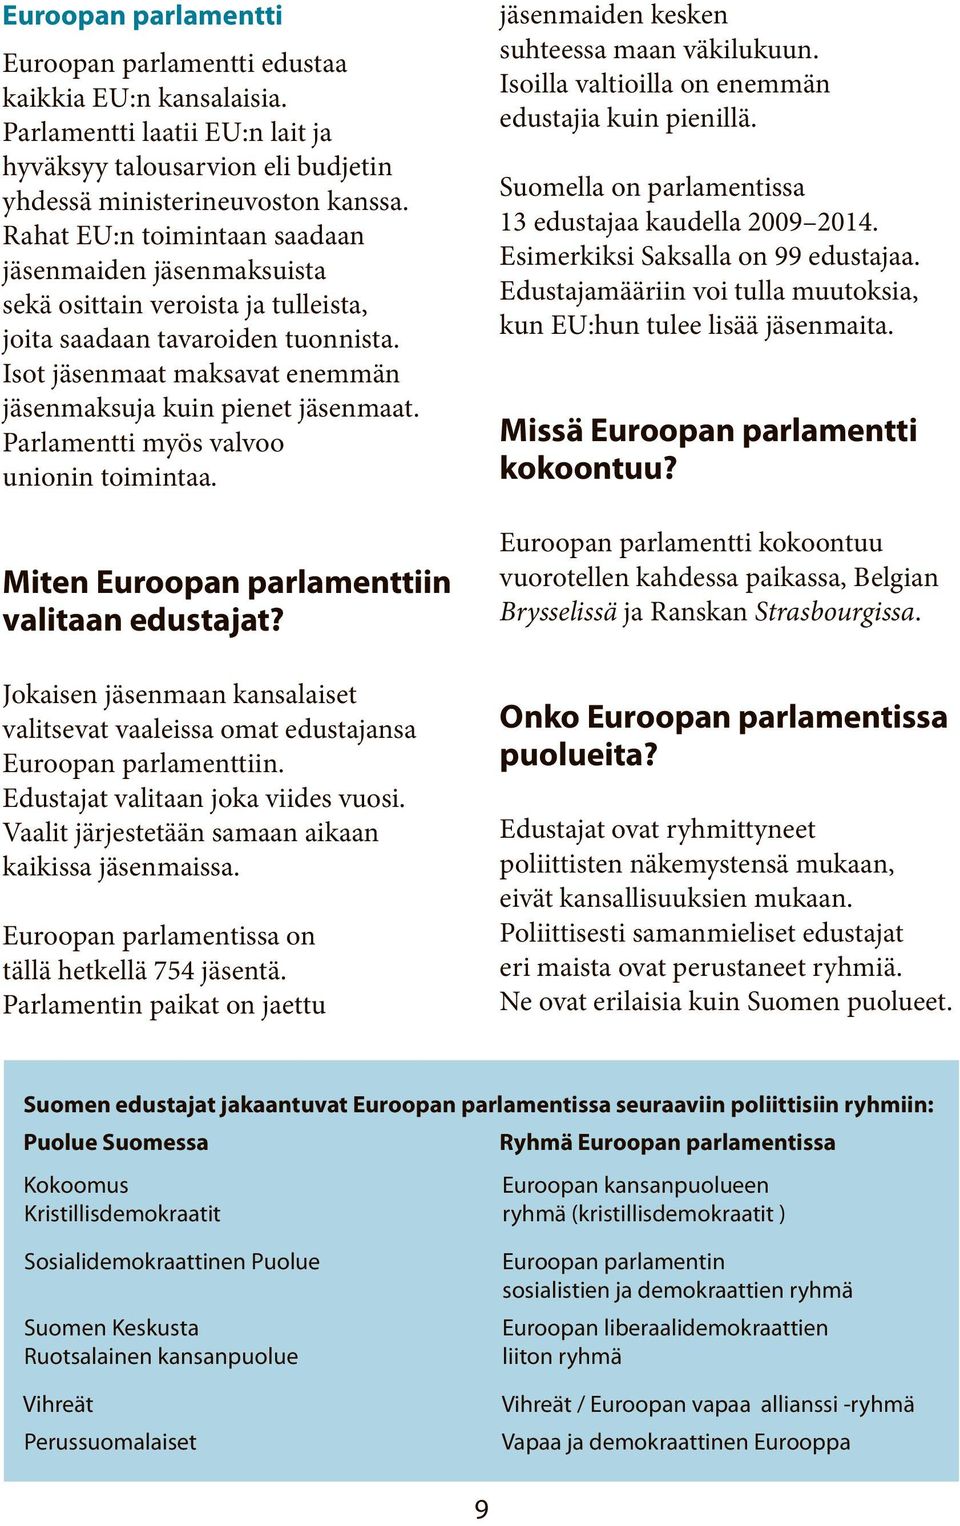 Parlamentti myös valvoo unionin toimintaa. Miten Euroopan parlamenttiin valitaan edustajat? Jokaisen jäsenmaan kansalaiset valitsevat vaaleissa omat edustajansa Euroopan parlamenttiin.